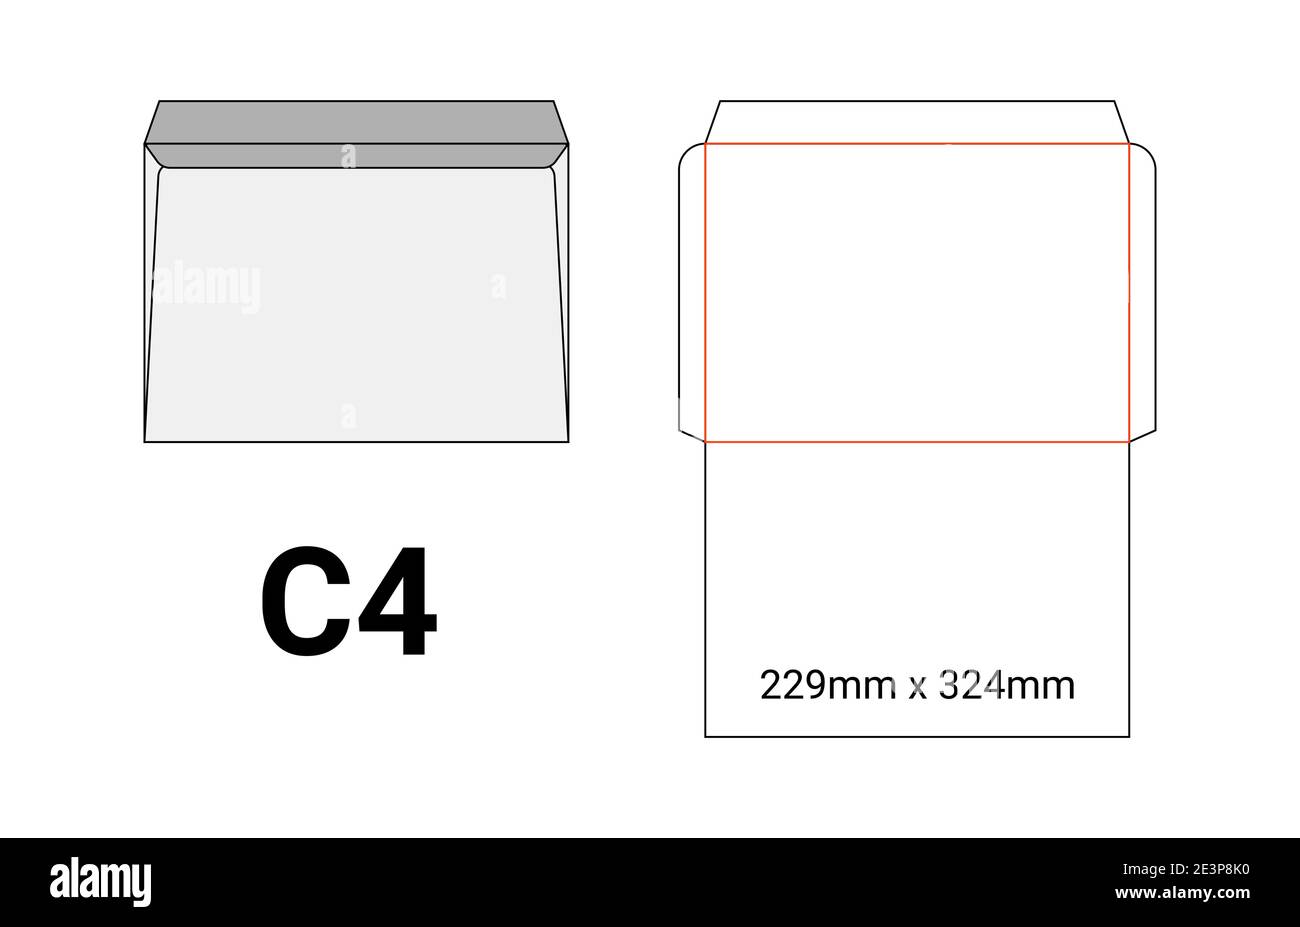 C4 Umschlag Mockup a4 weiß Vorlage Zuschnitt Größe Stock-Vektorgrafik -  Alamy